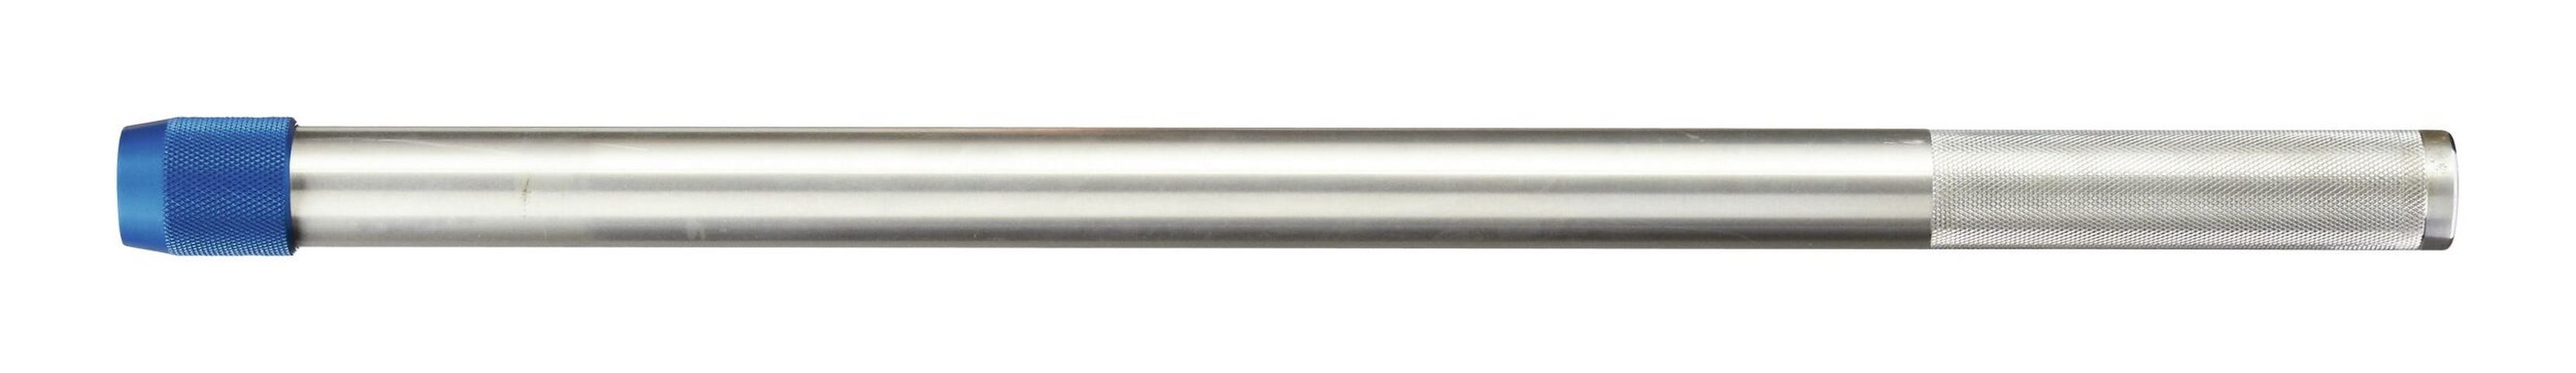 Gedore Drehmomentschlüssel, Aufsteckrohr mm Drehmomentschlüssel Dremometer 762 Aluminium für